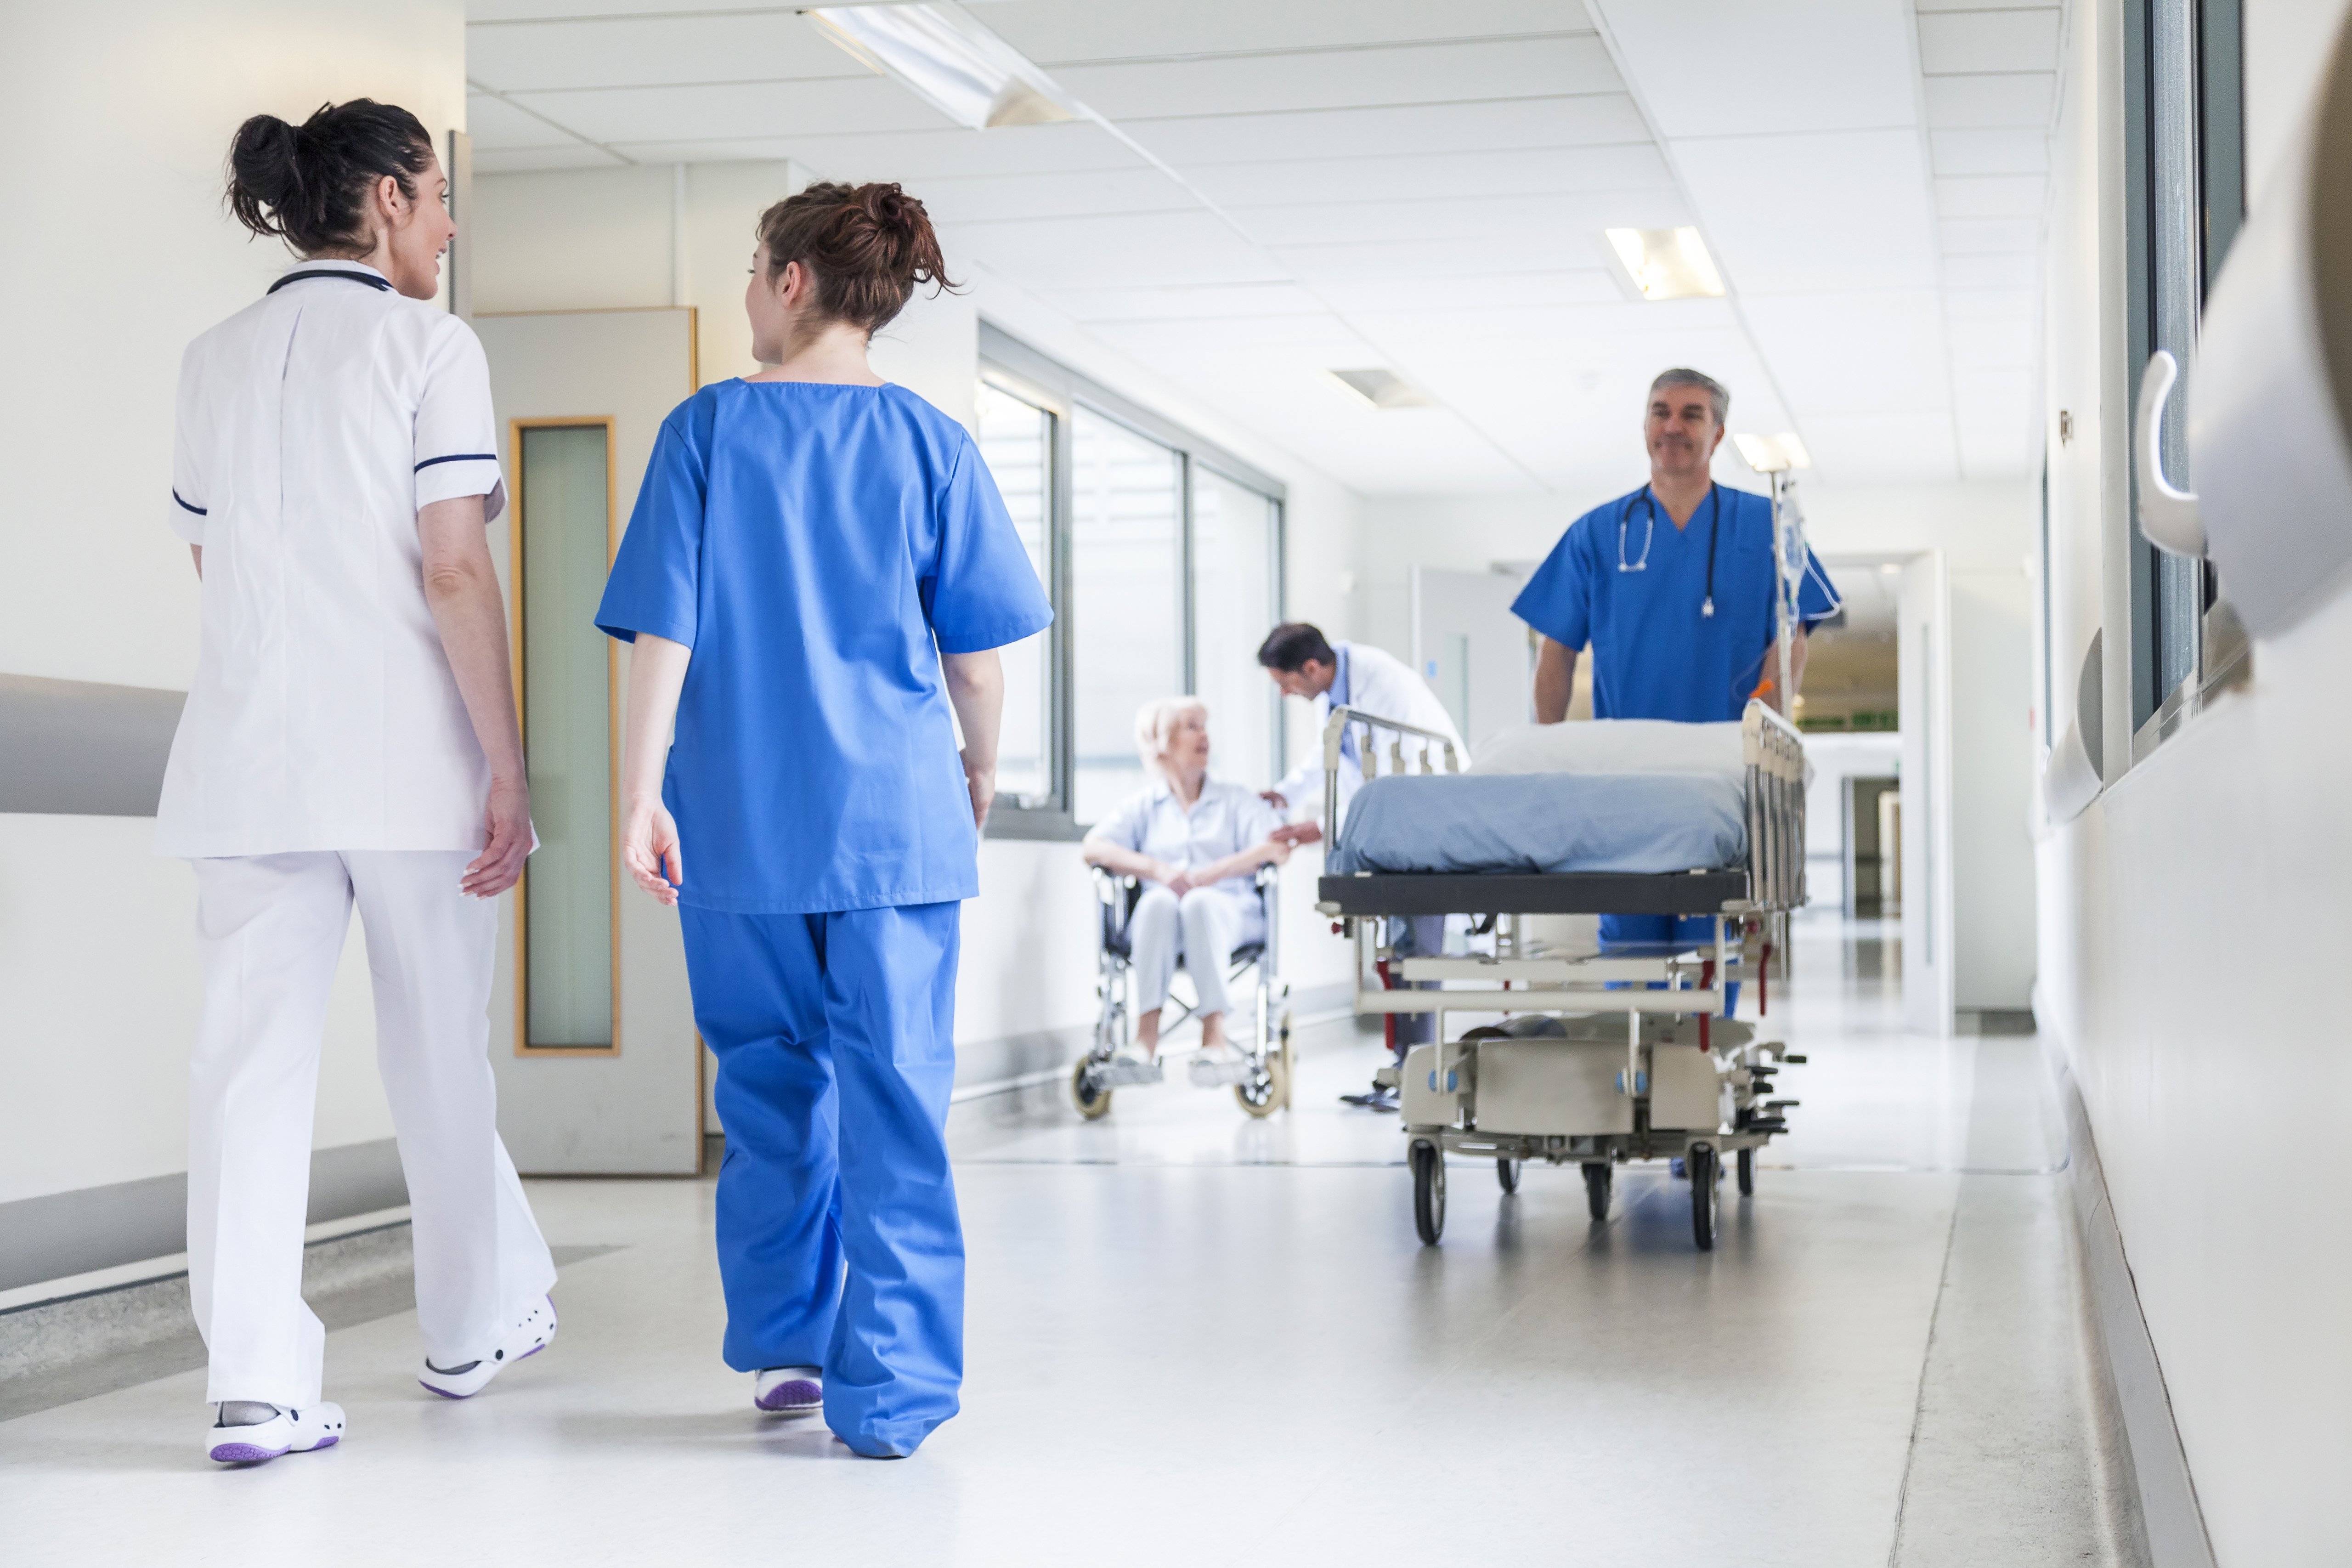 Hombre trasladando camilla en pasillo de hospital, rodeado de personal médico. | Imagen: Shutterstock